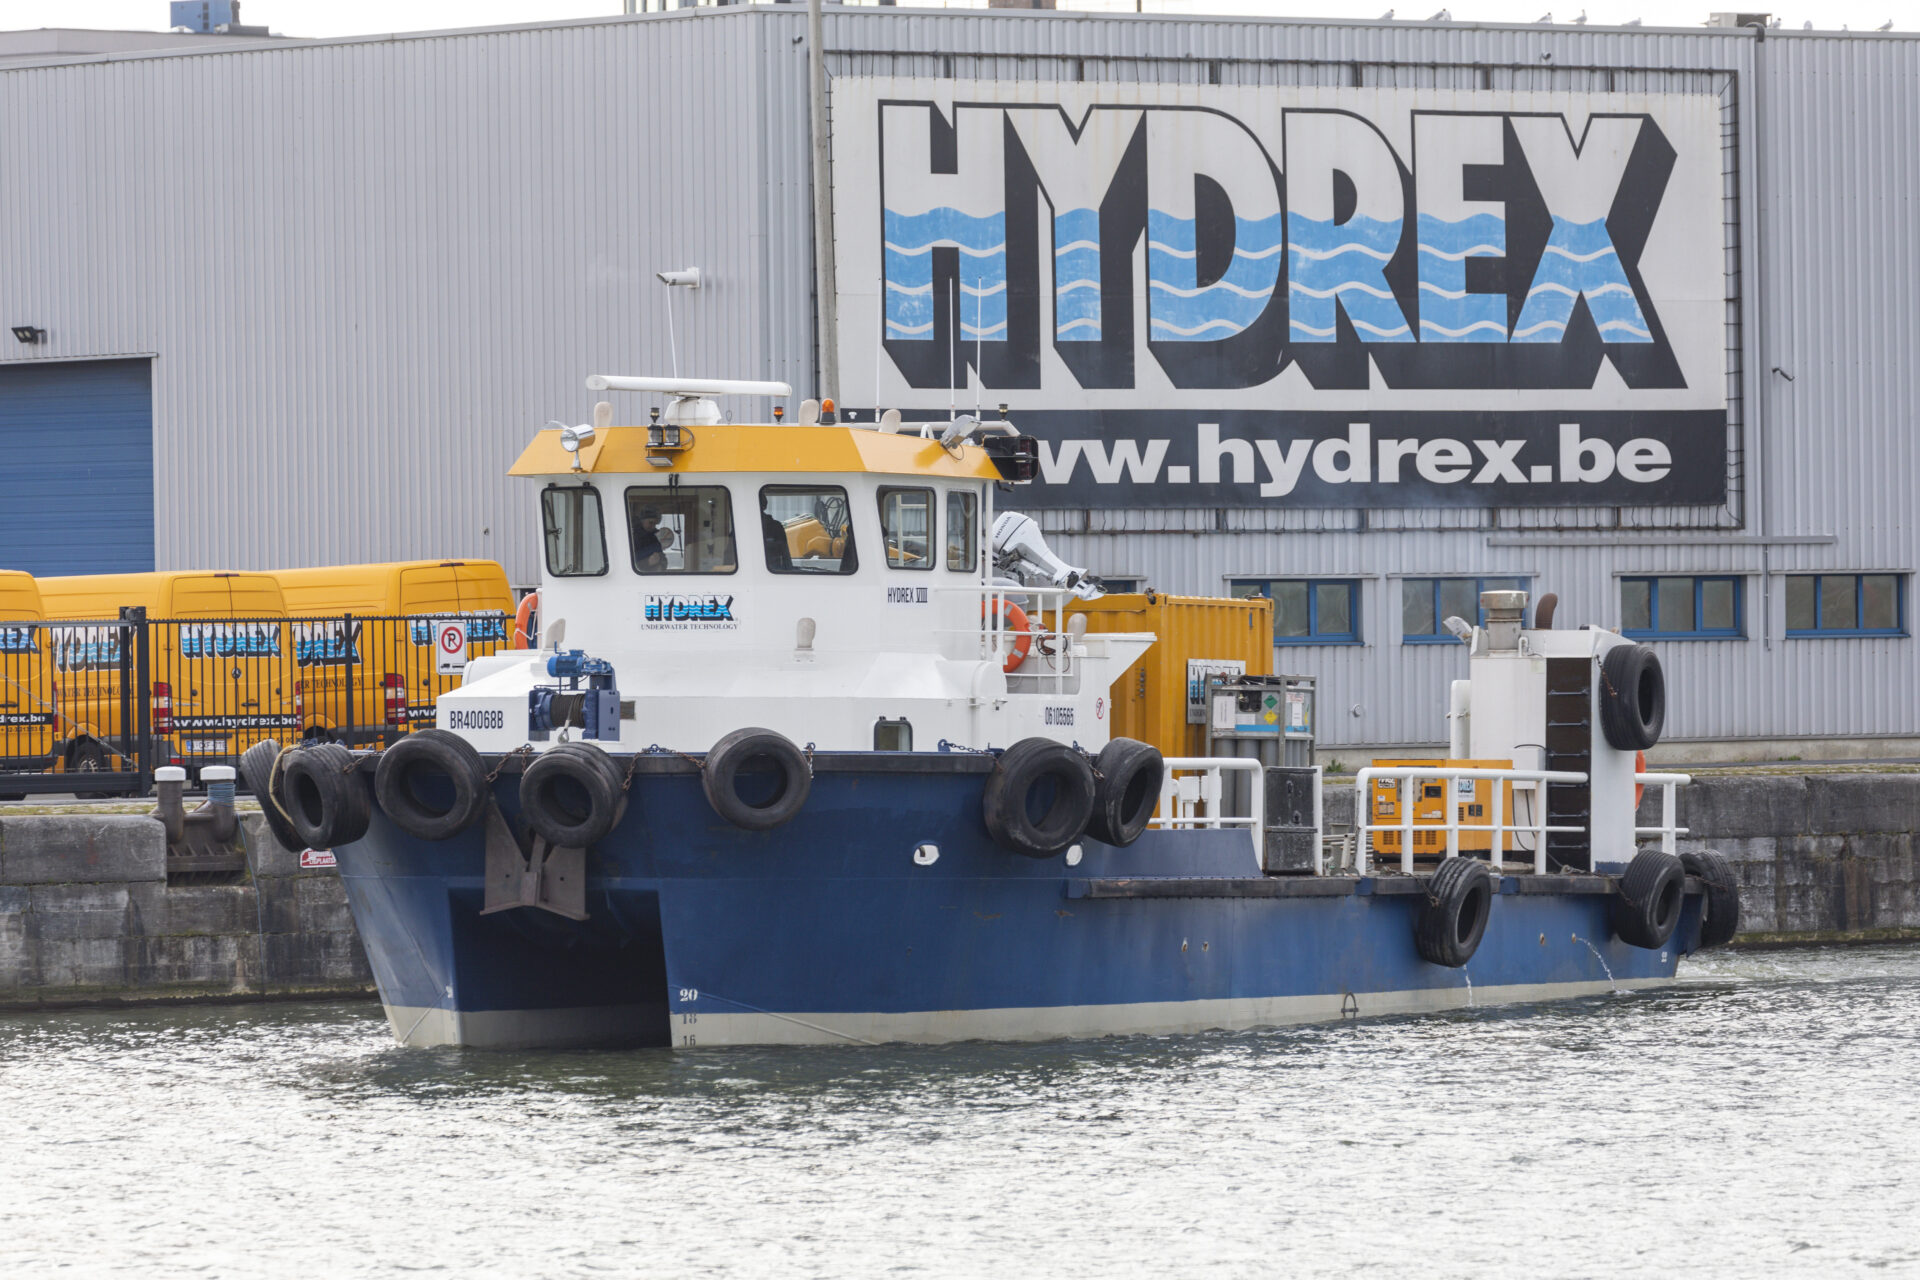 Hydrex VIII at Hydrex HQ, Antwerp